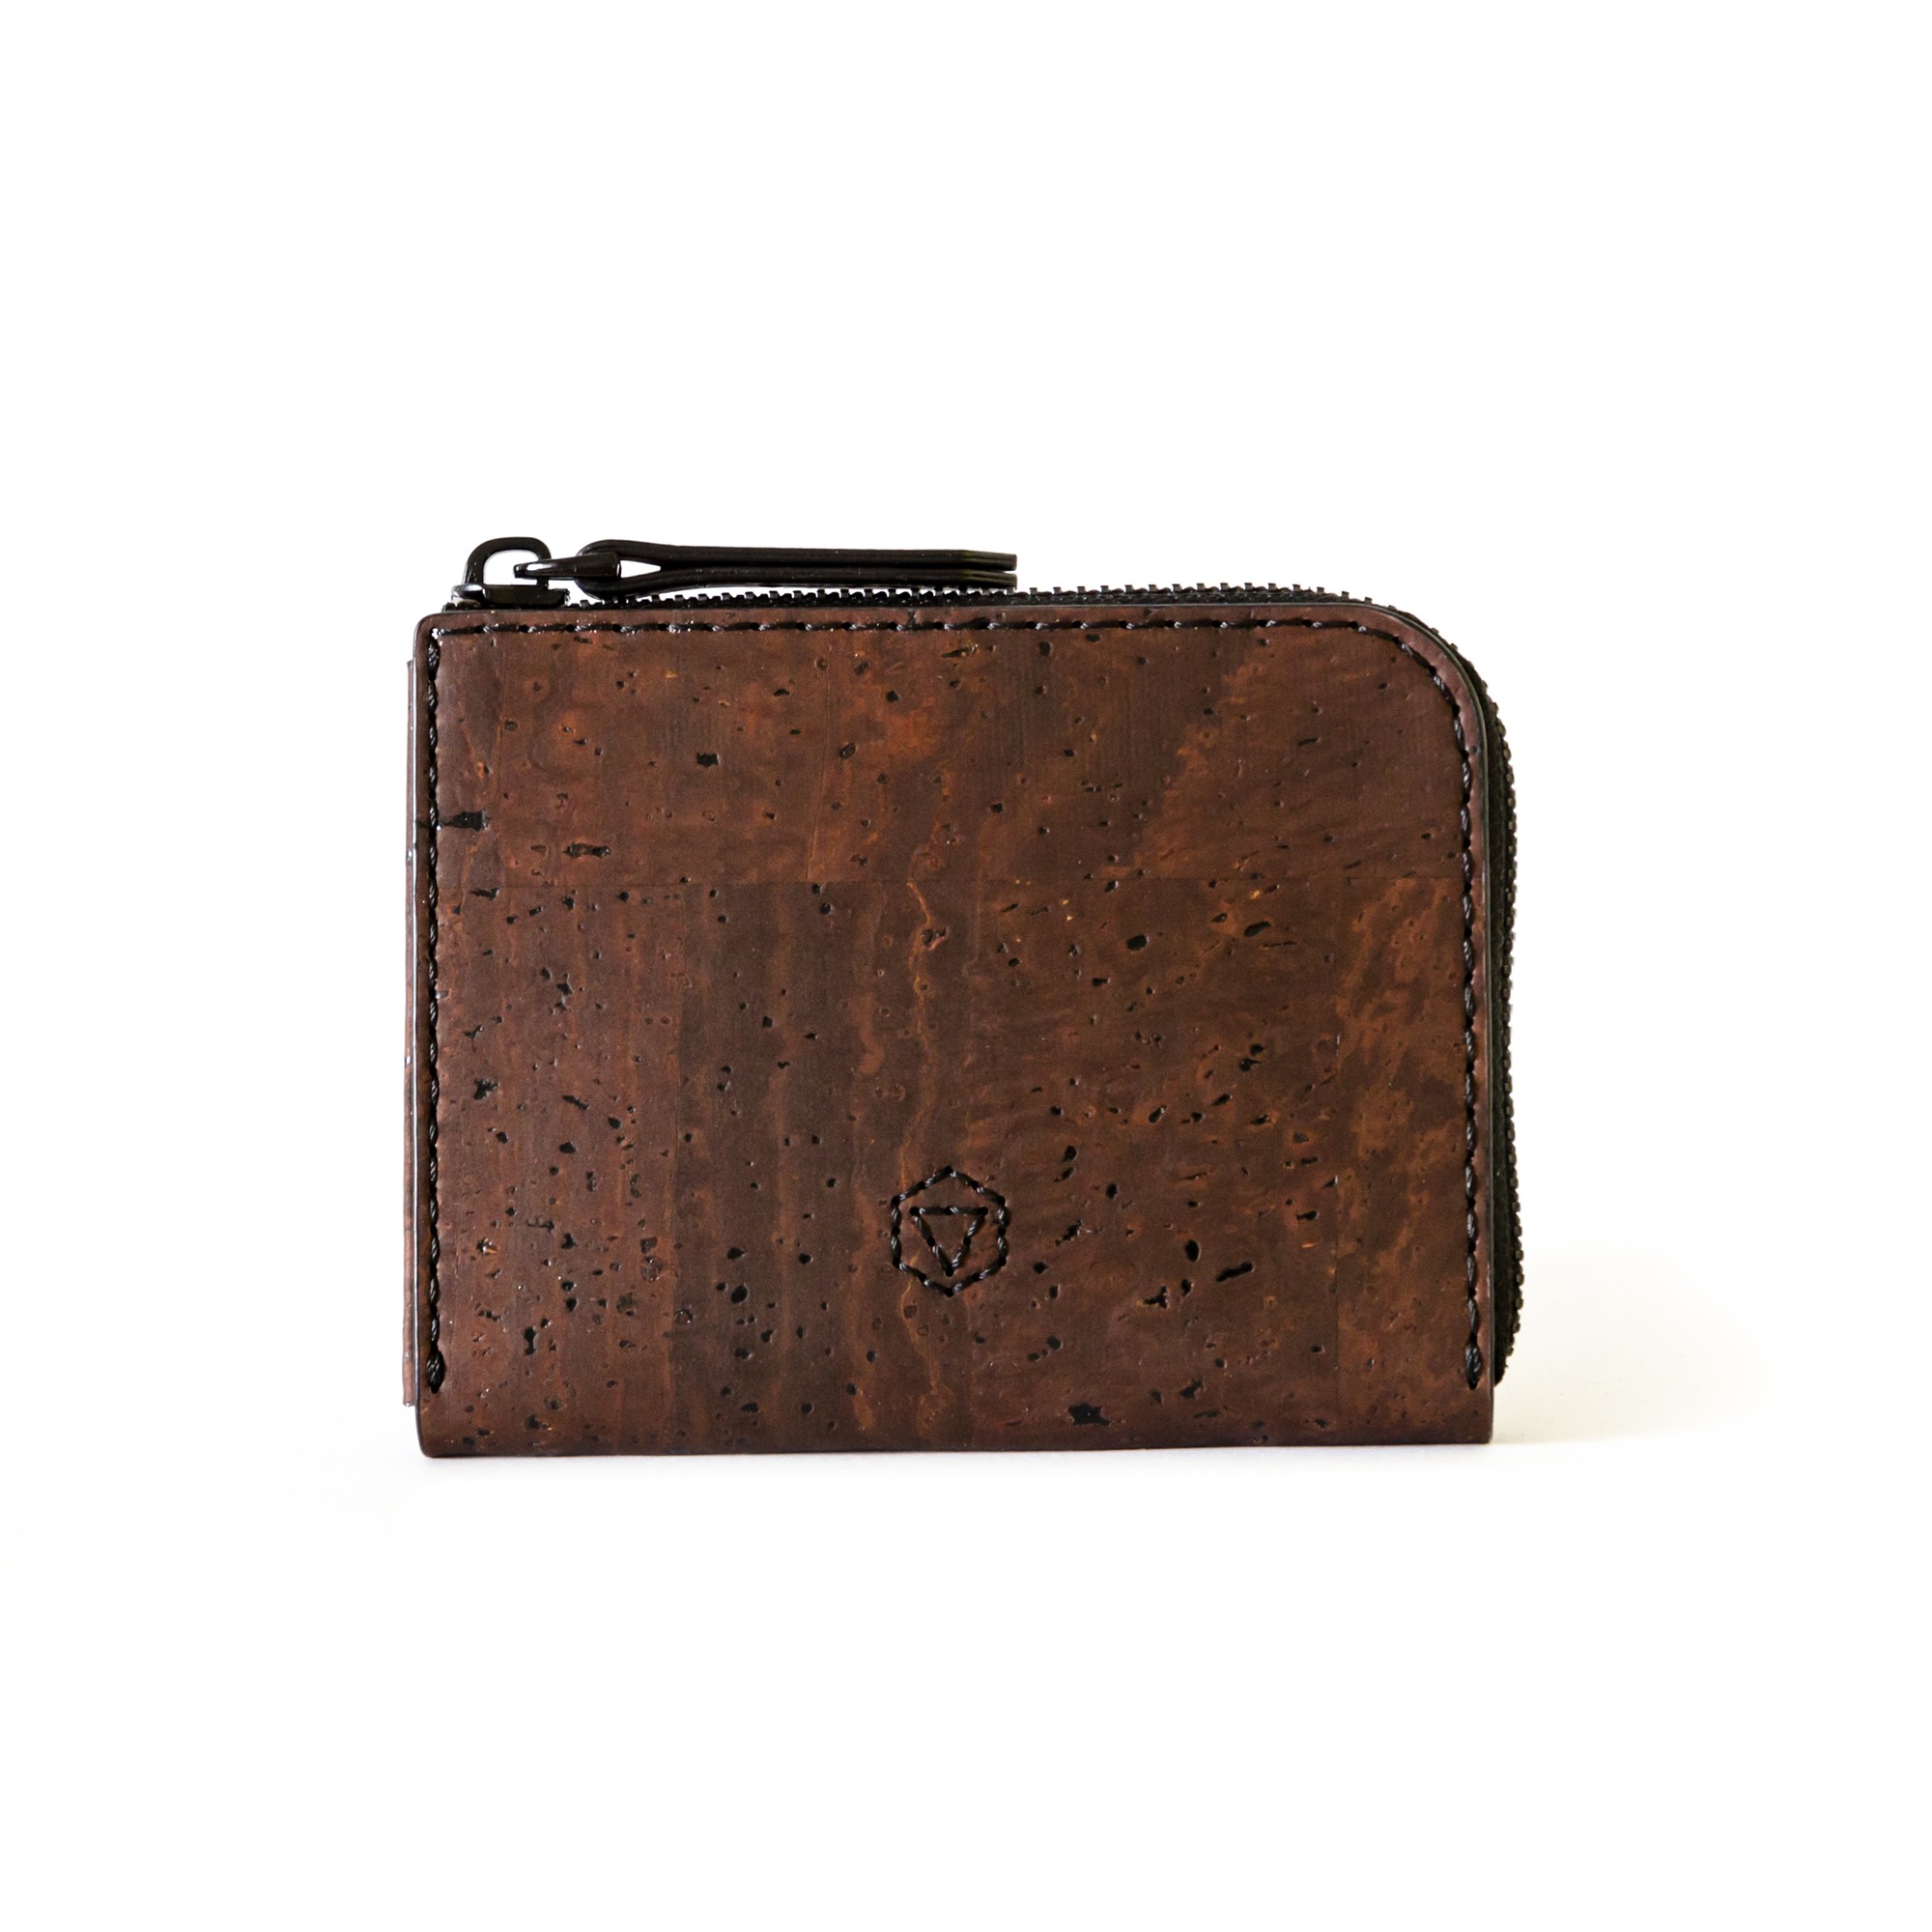 Natural cork Castle Lite wallet in brown color